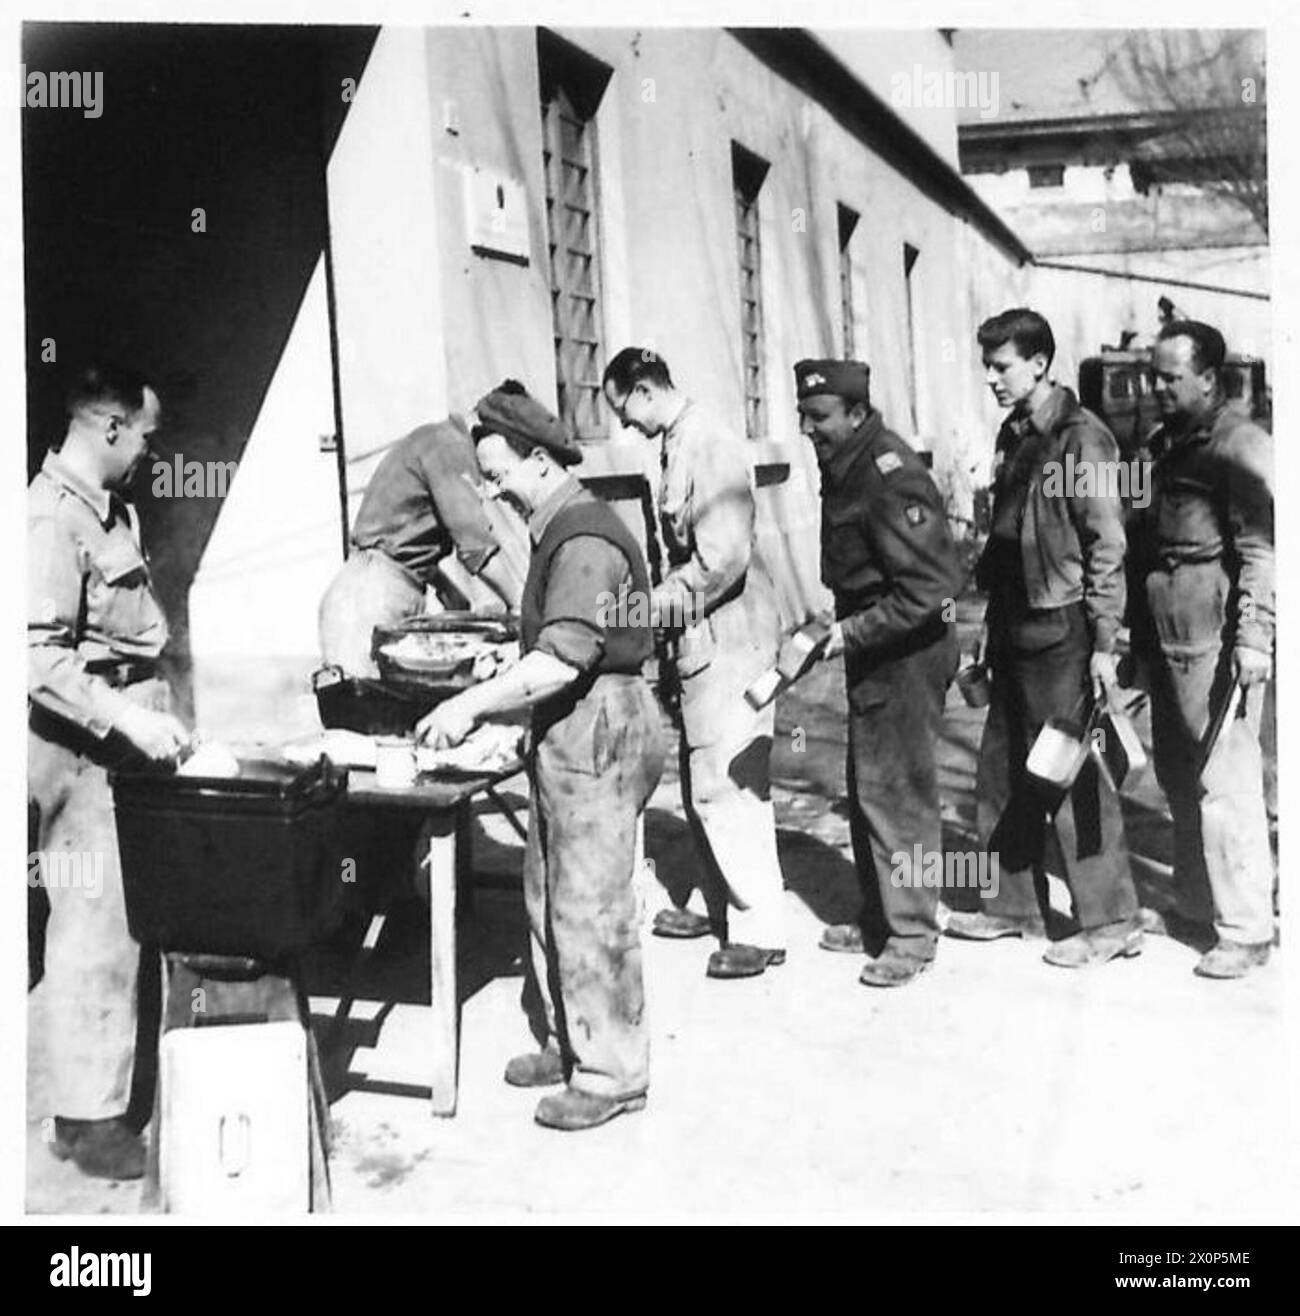 AMERIKANISCHER FELDDIENST MIT DER ACHTEN ARMEE - britische Soldaten und amerikanische Freiwillige Ambulanzfahrer stellen sich für ihr Mittagessen an, das von einem britischen Koch serviert wird. Fotografisches negativ, britische Armee Stockfoto